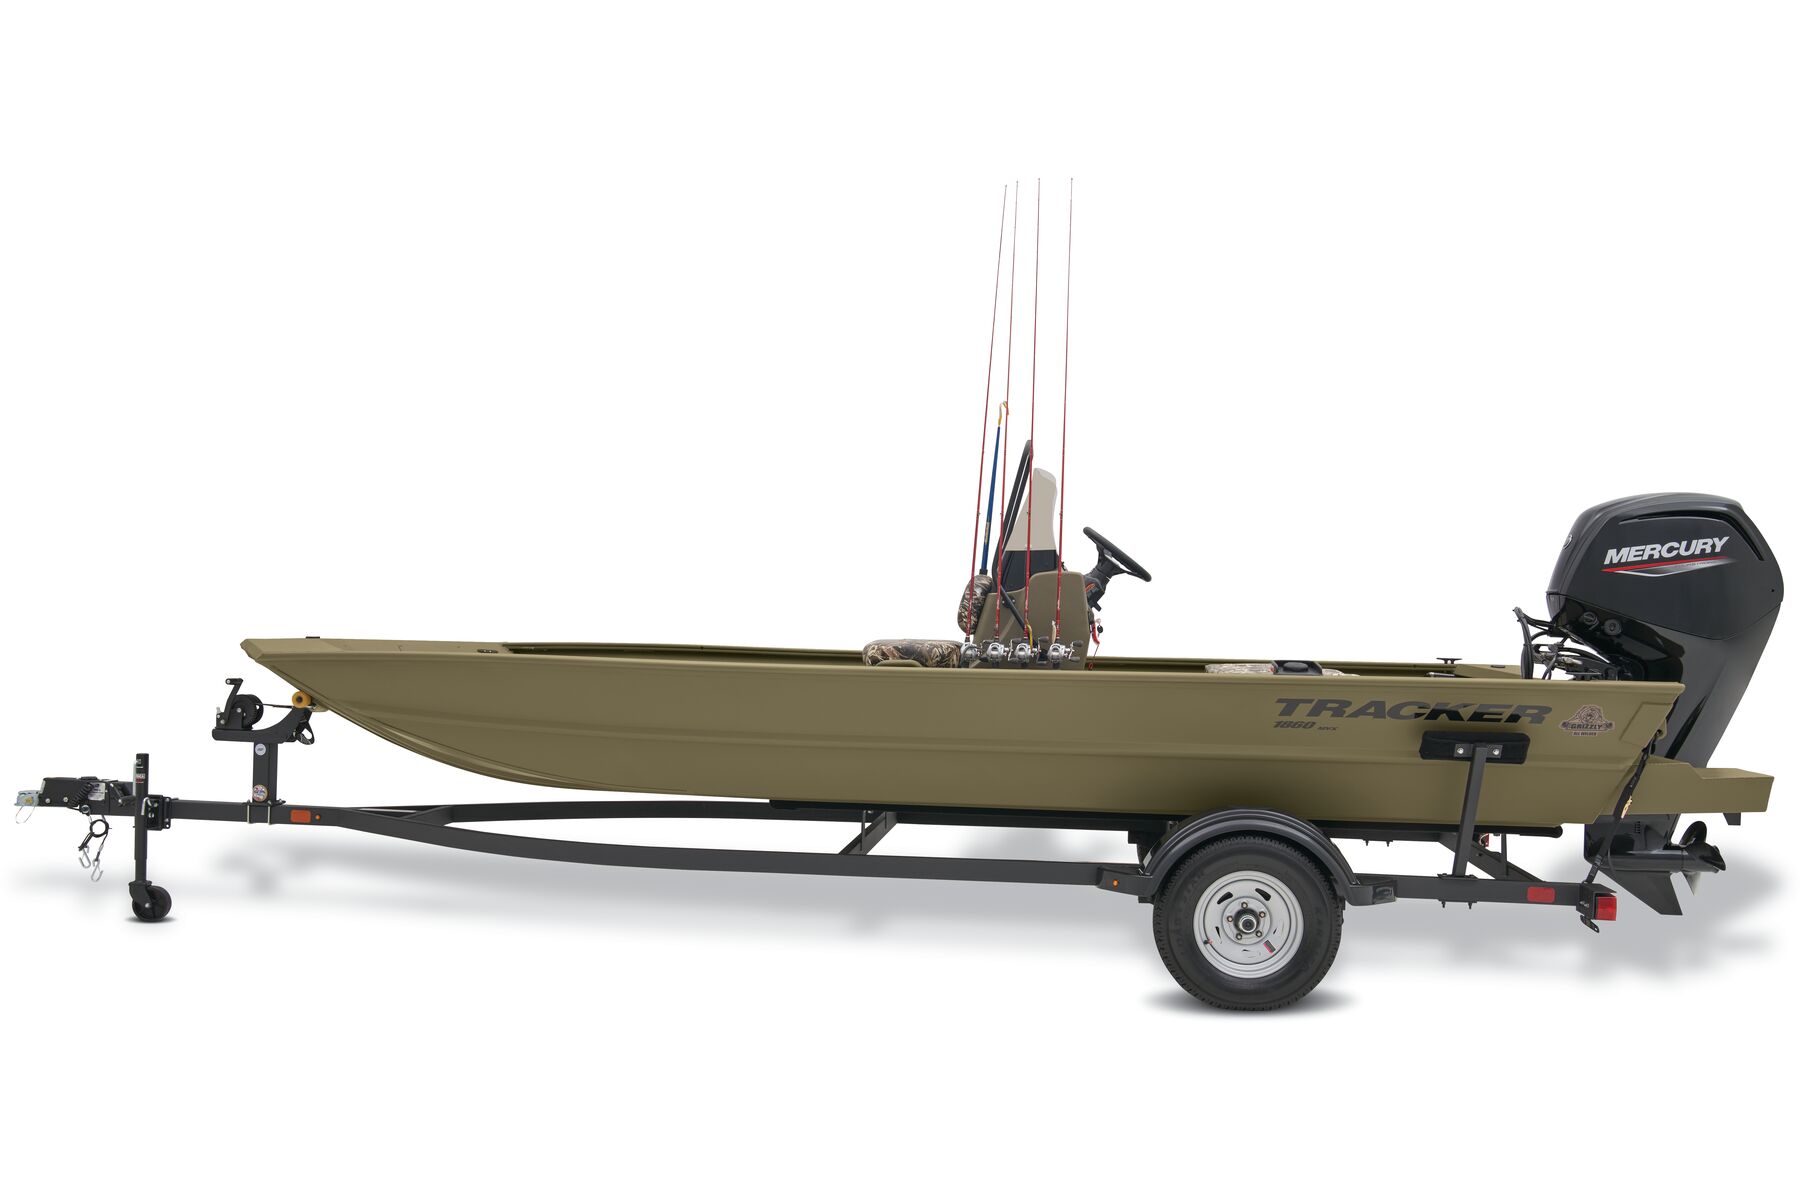 2007 Ranger 1860 Angler - boats - by owner - marine sale - craigslist